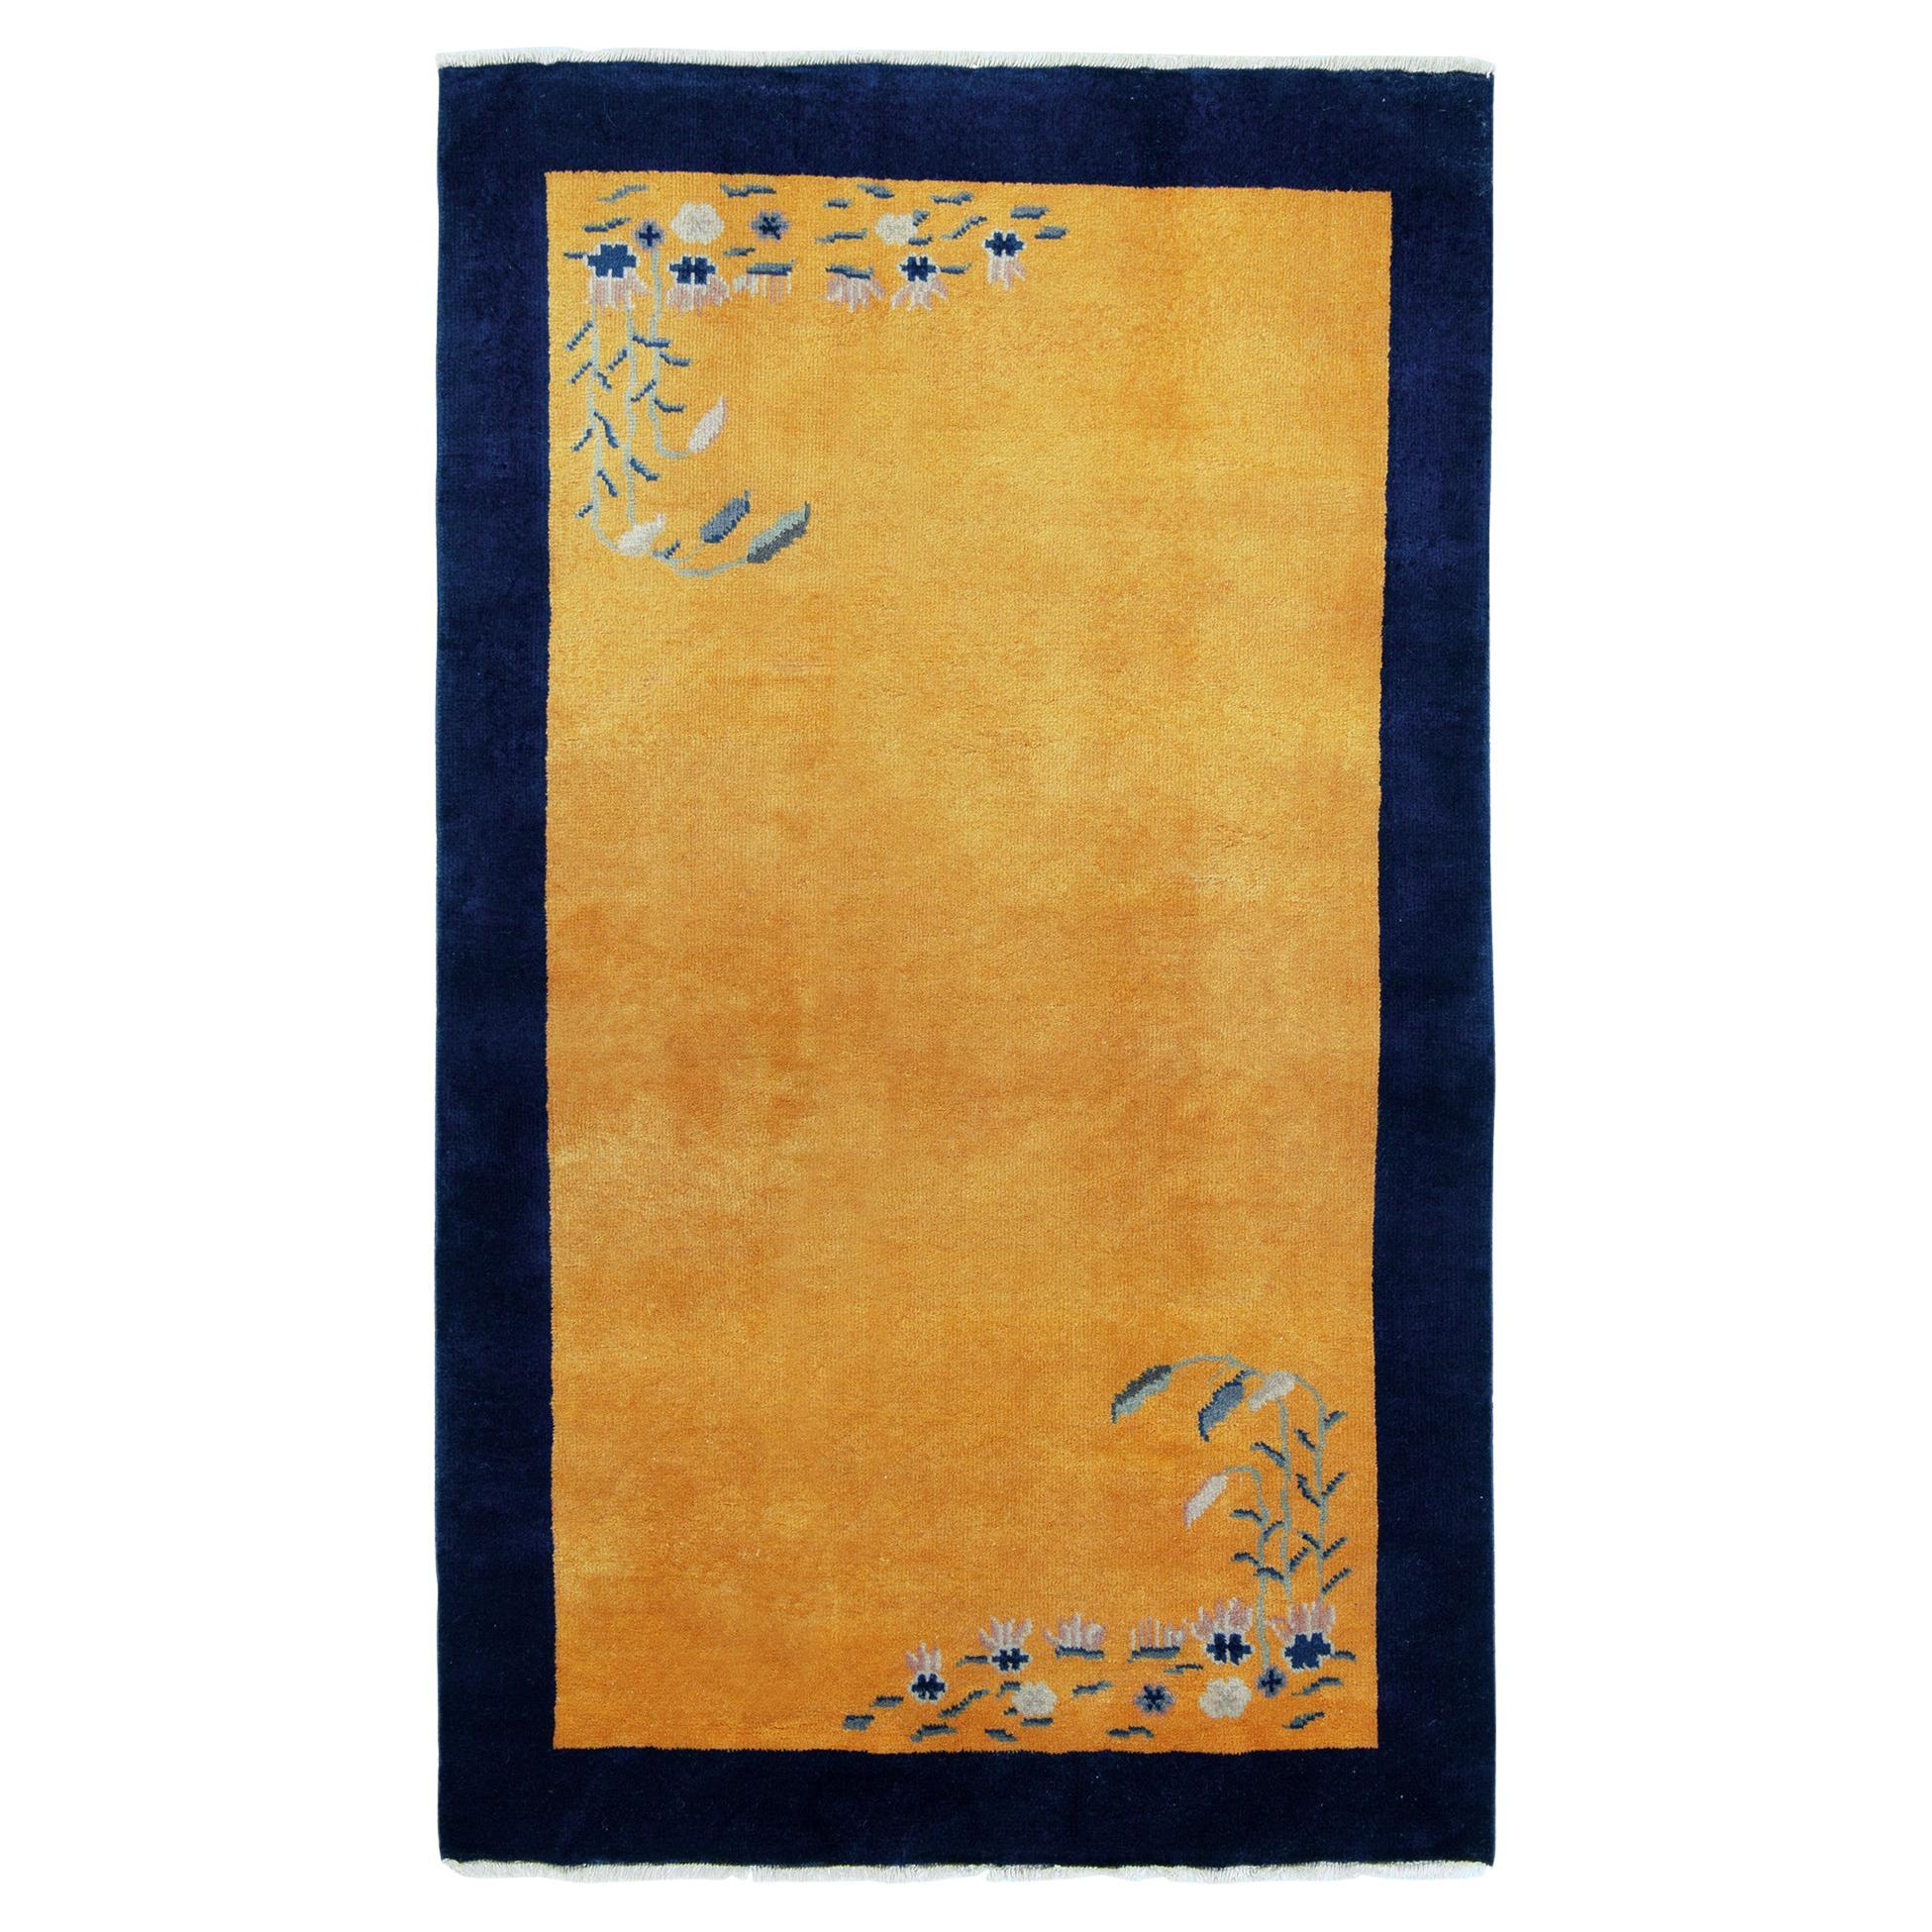 Chinesischer Deko-Teppich im Vintage-Stil mit goldener und blauer Bordüre, Floral von Teppich & Kelim